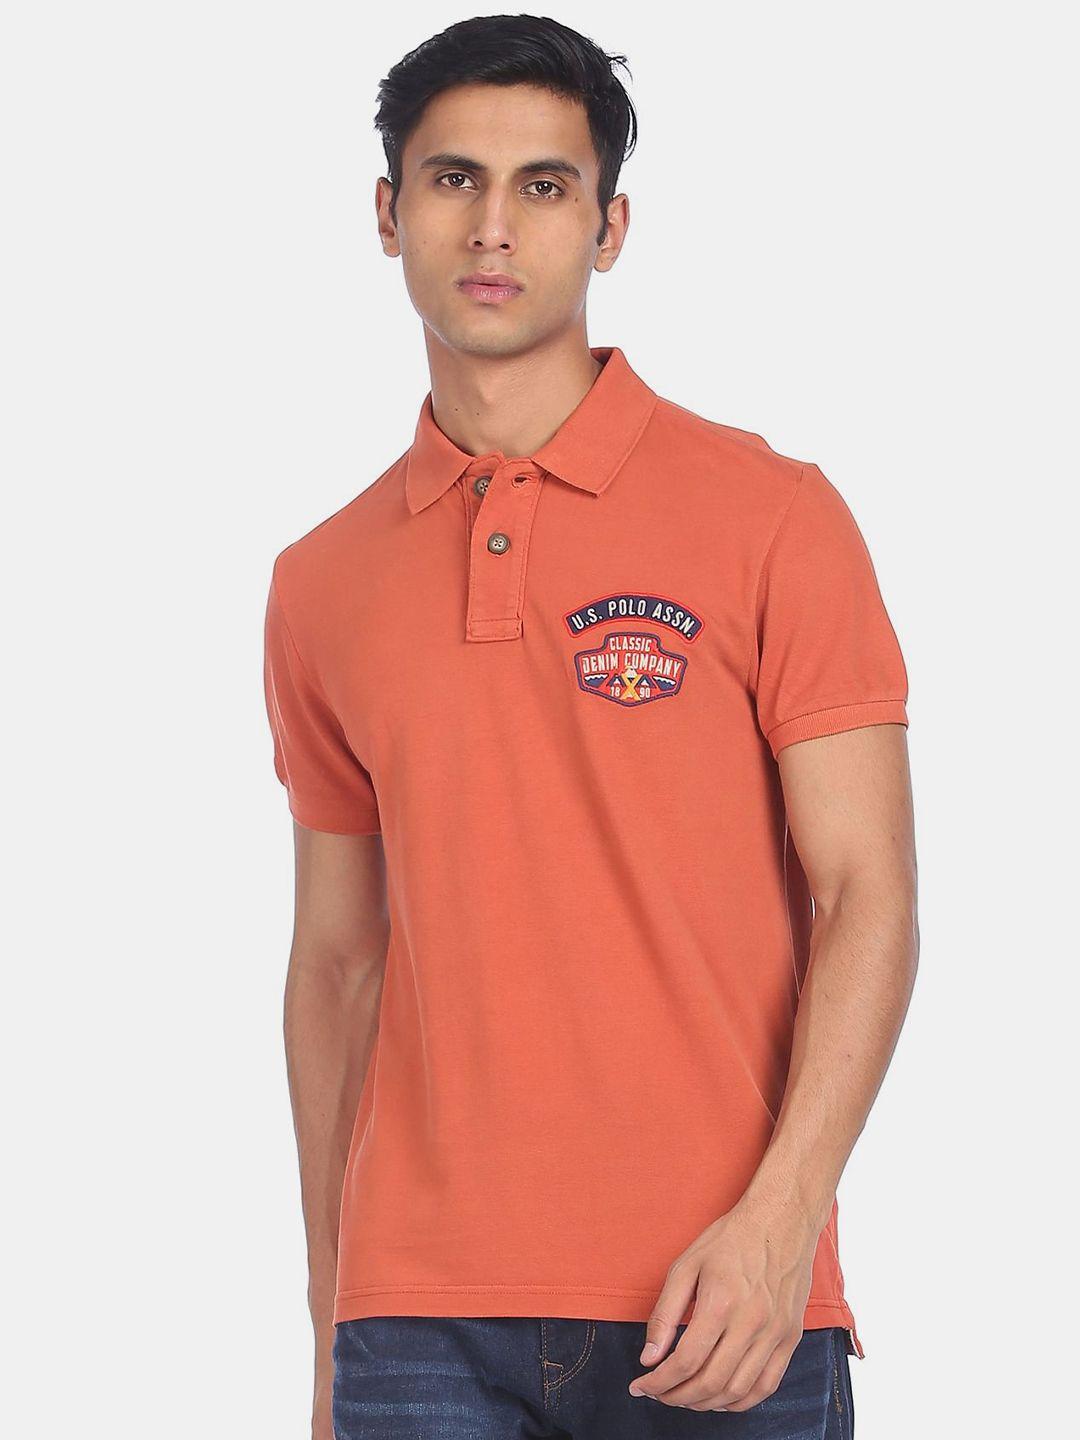 u.s. polo assn. denim co. men orange polo collar t-shirt